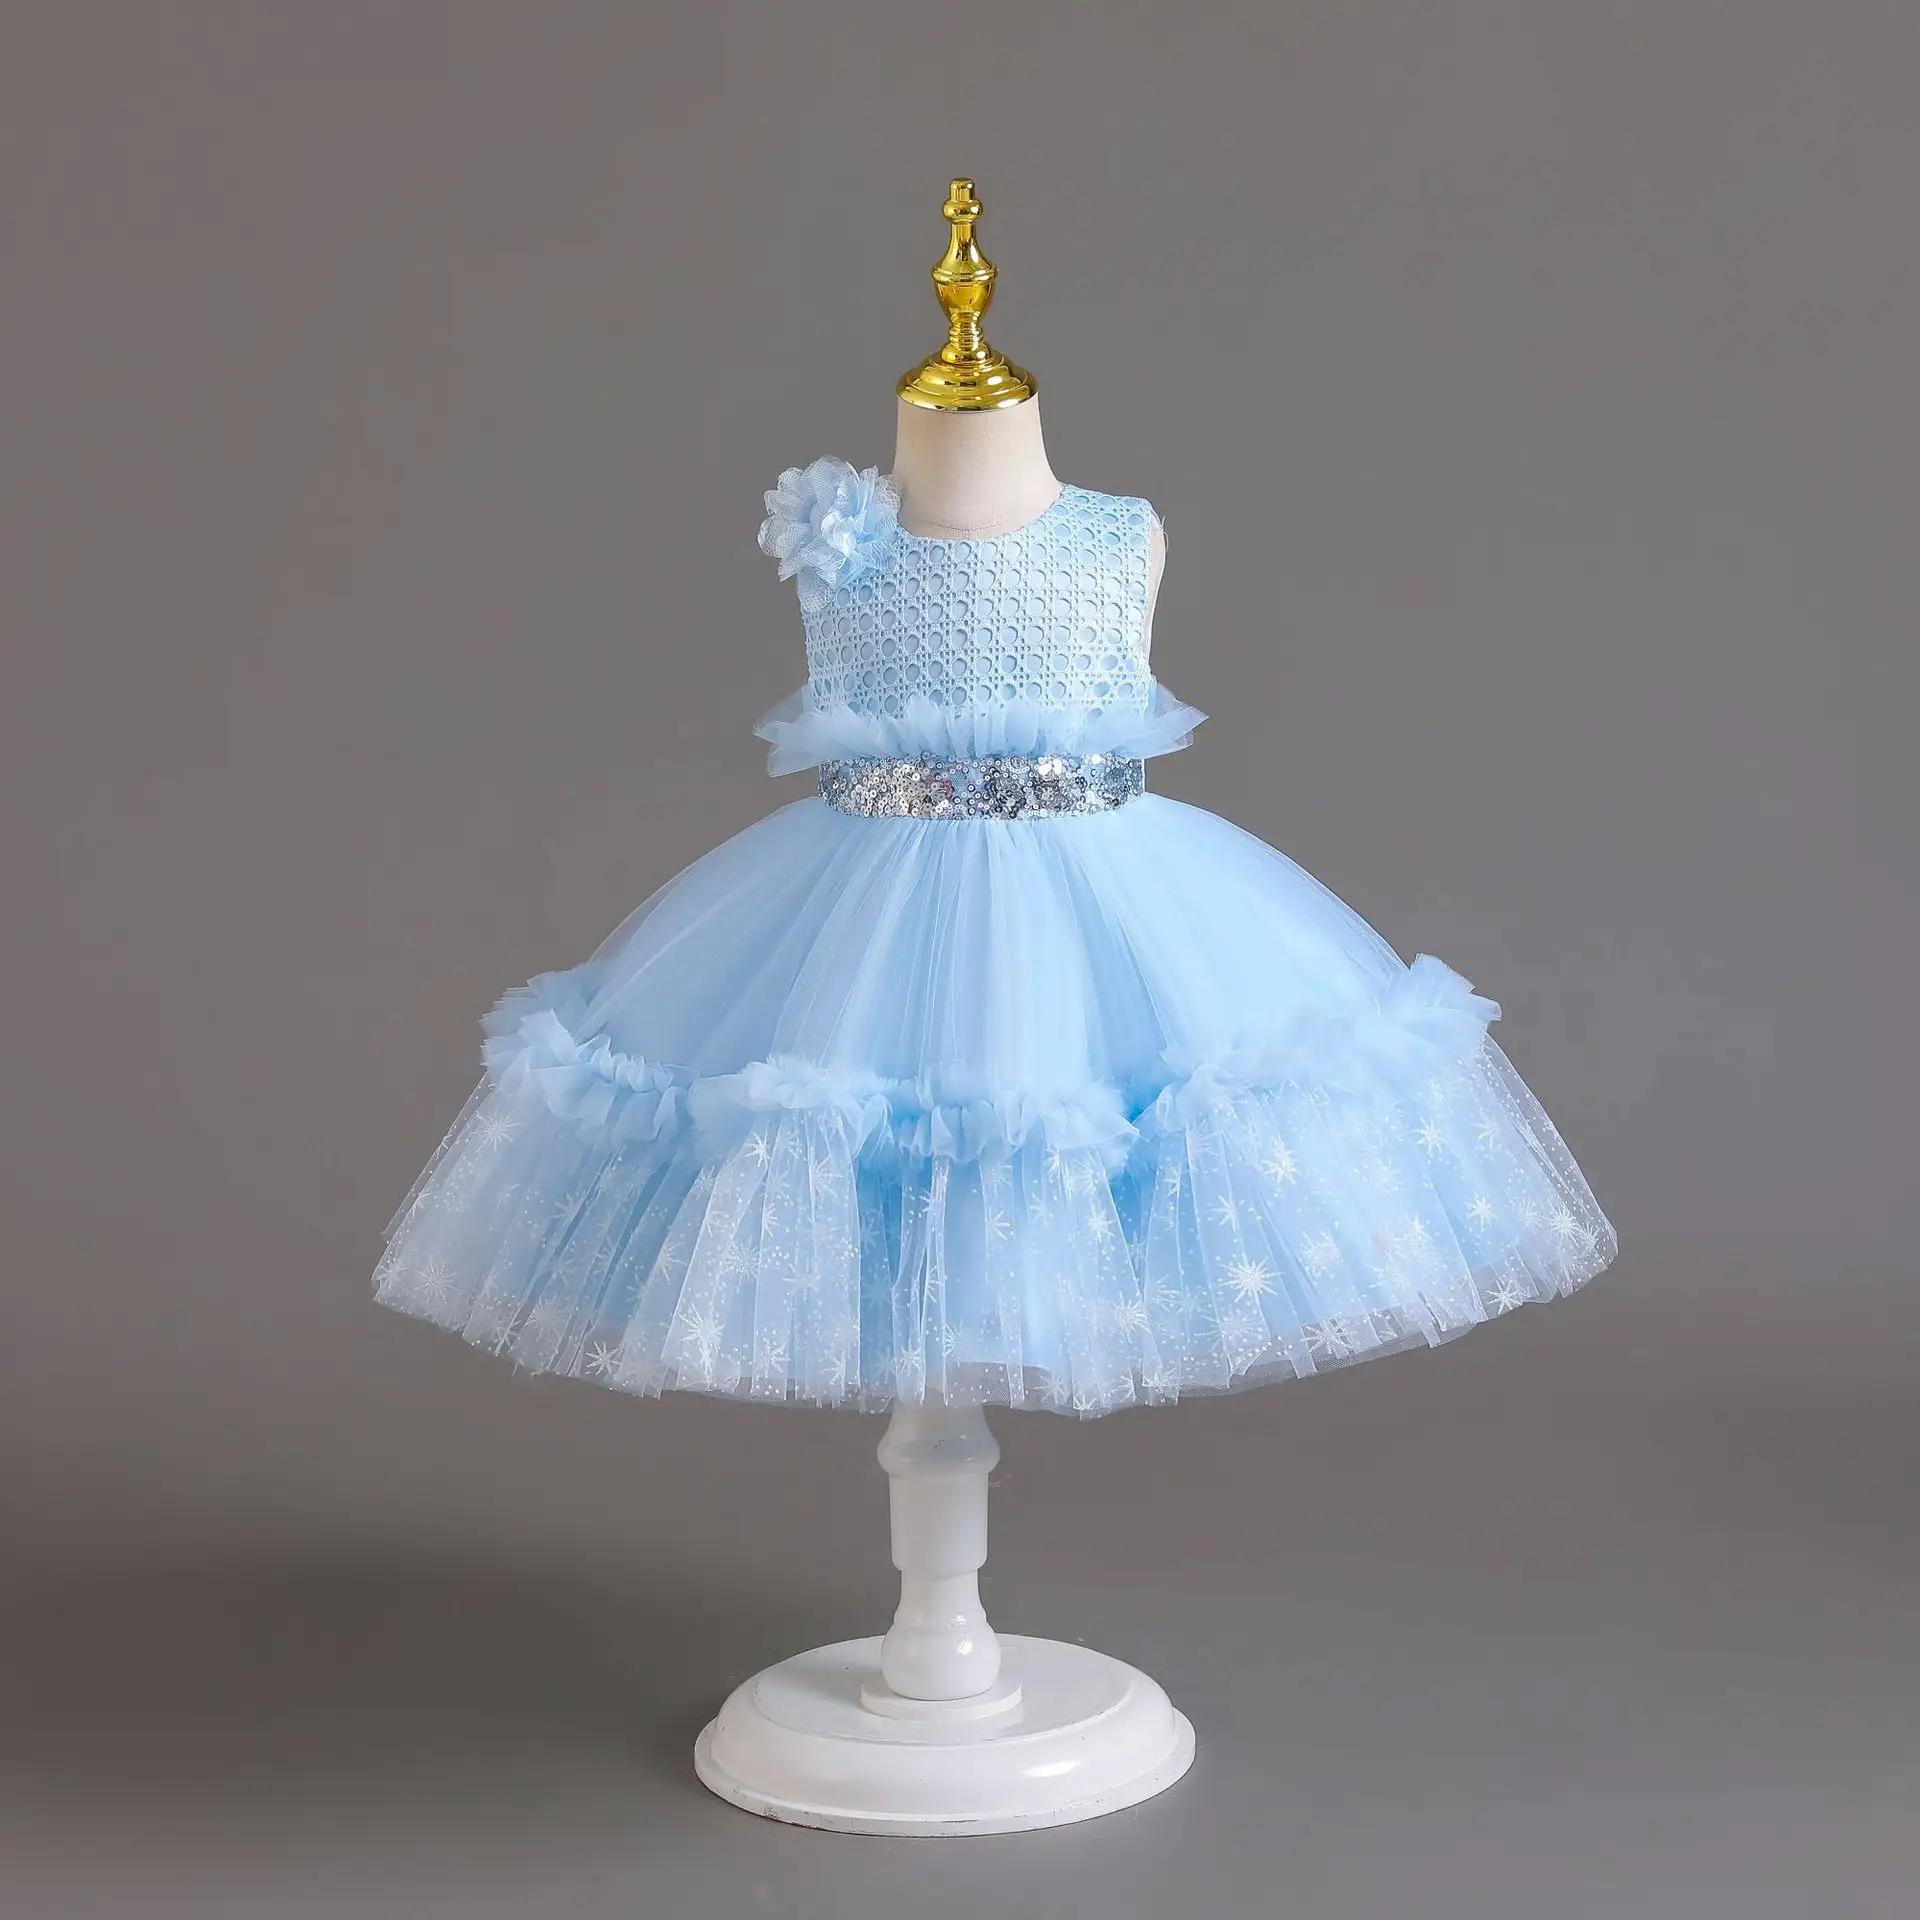 AX151 vente en gros de robe de princesse d'anniversaire en velours pour enfants nouveau modèle de baptême de bébé fille